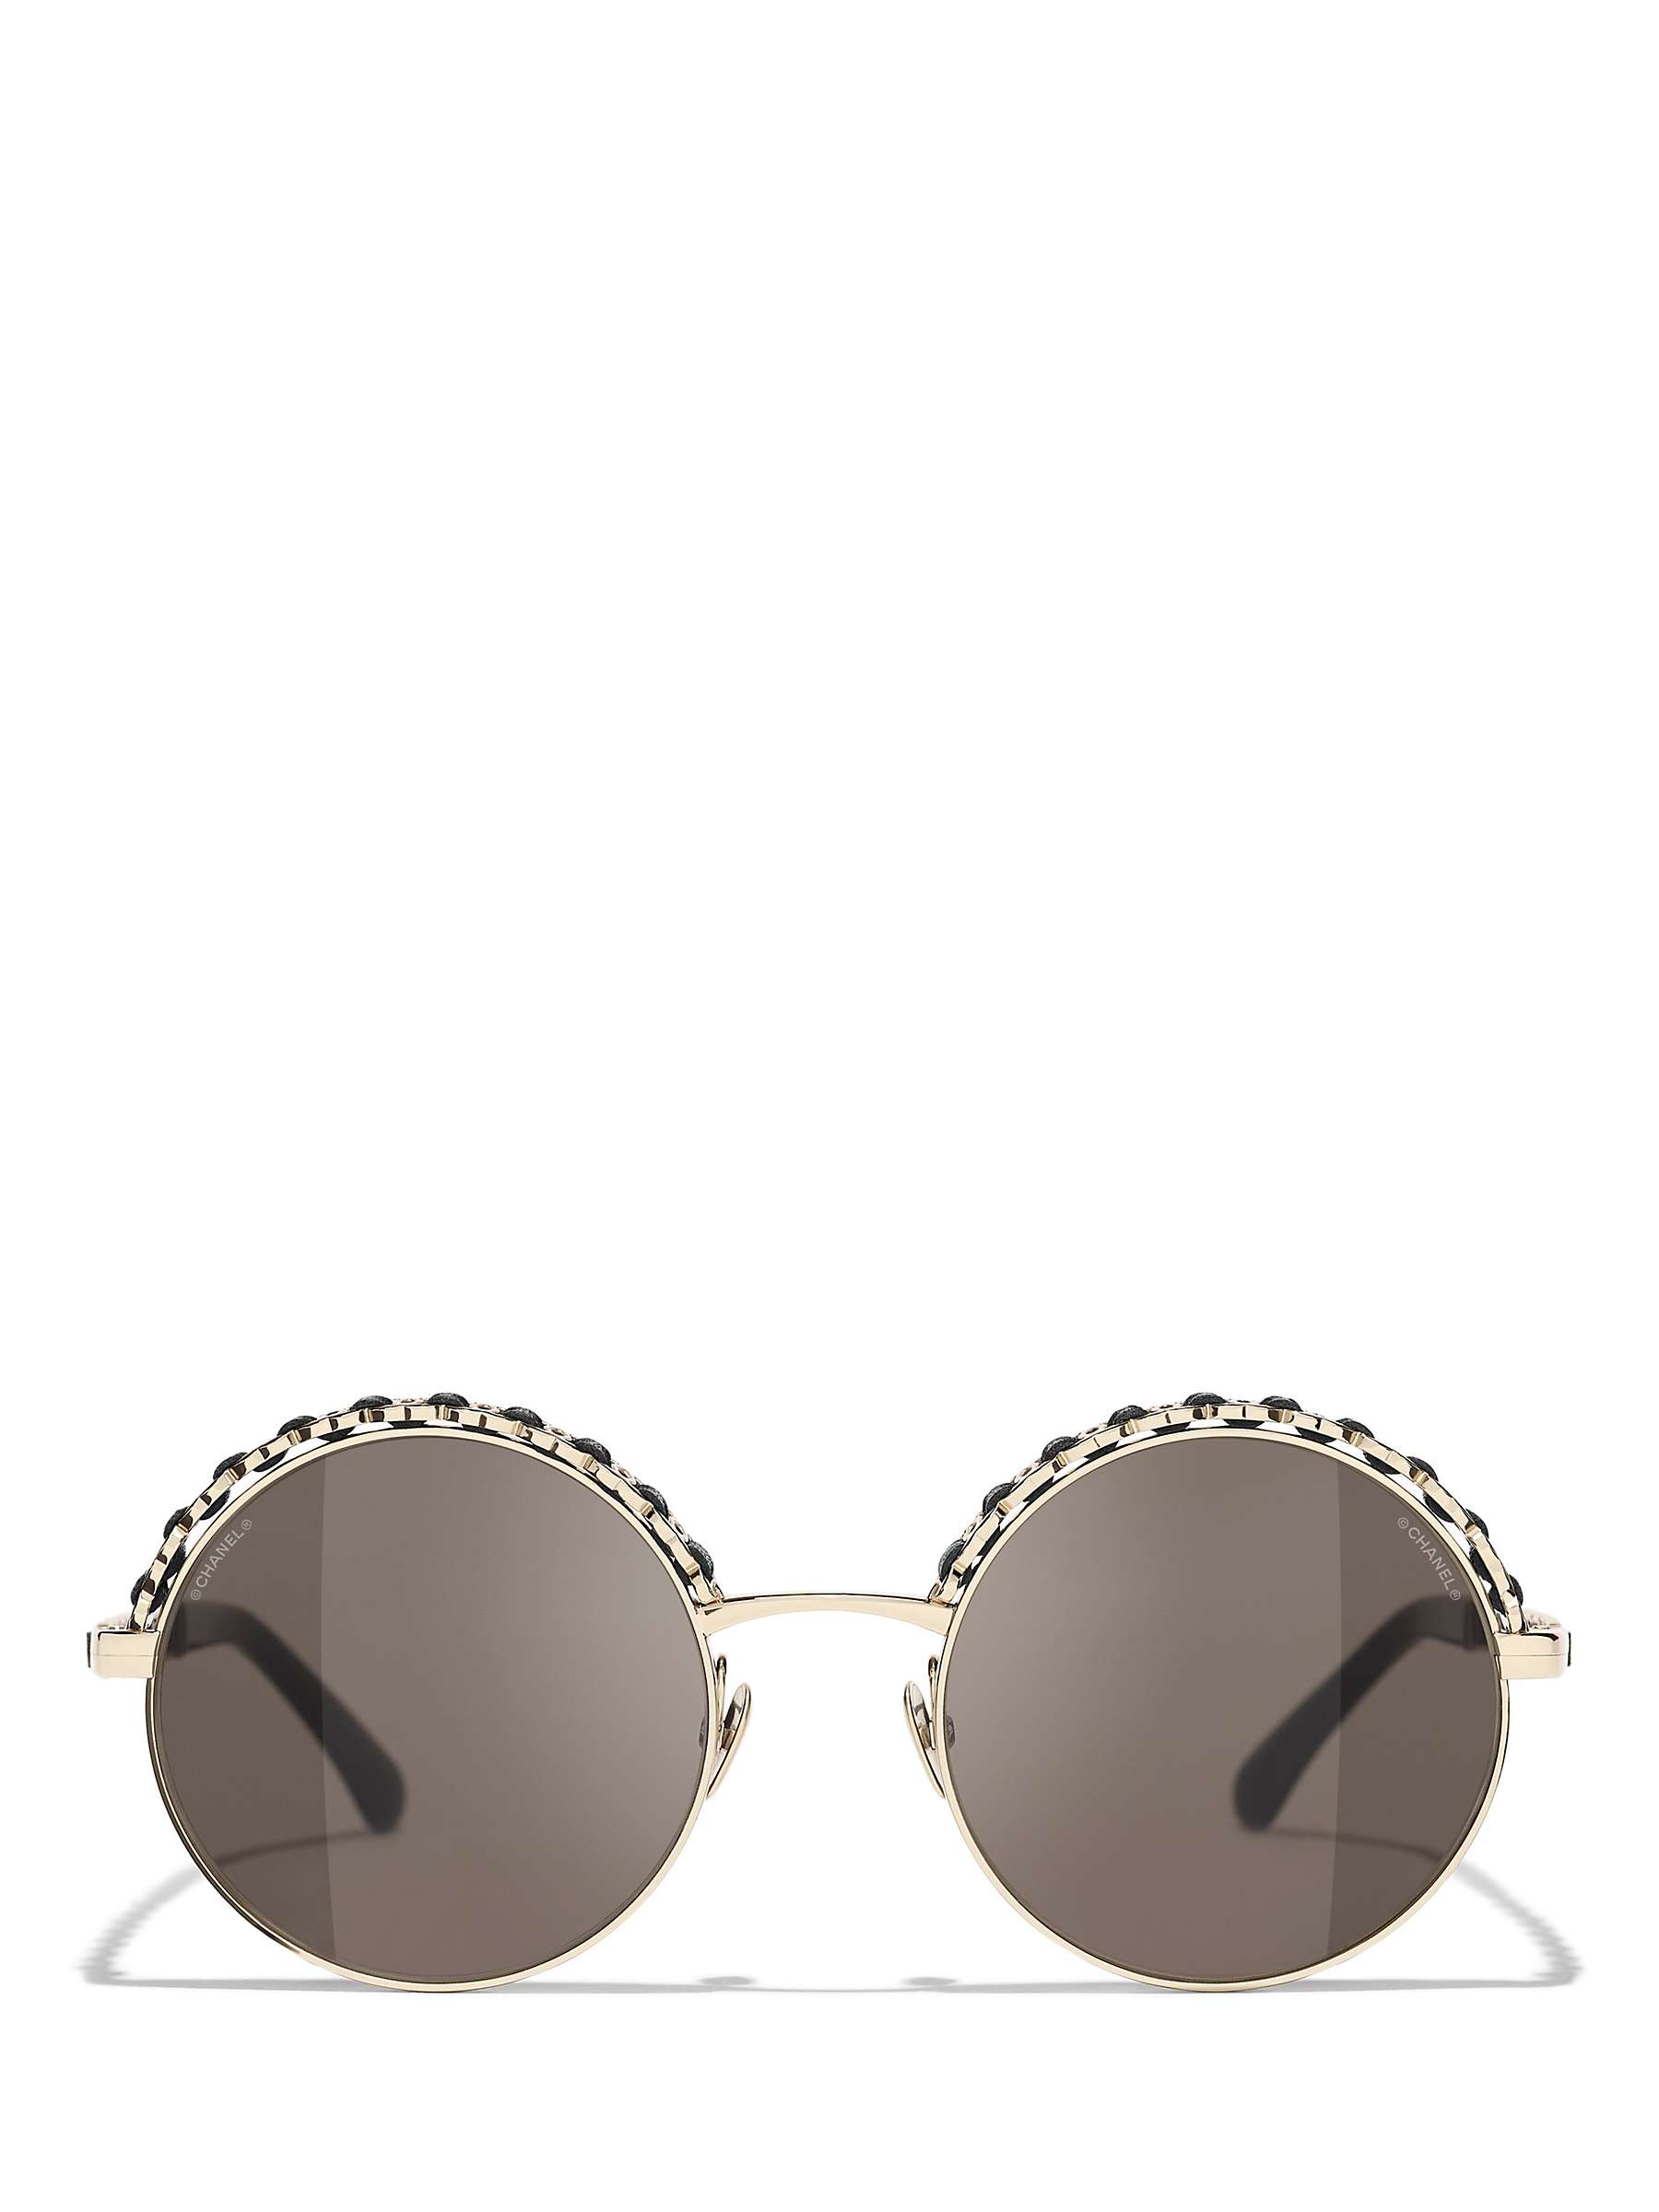 Chanel Round Pearl Sunglasses